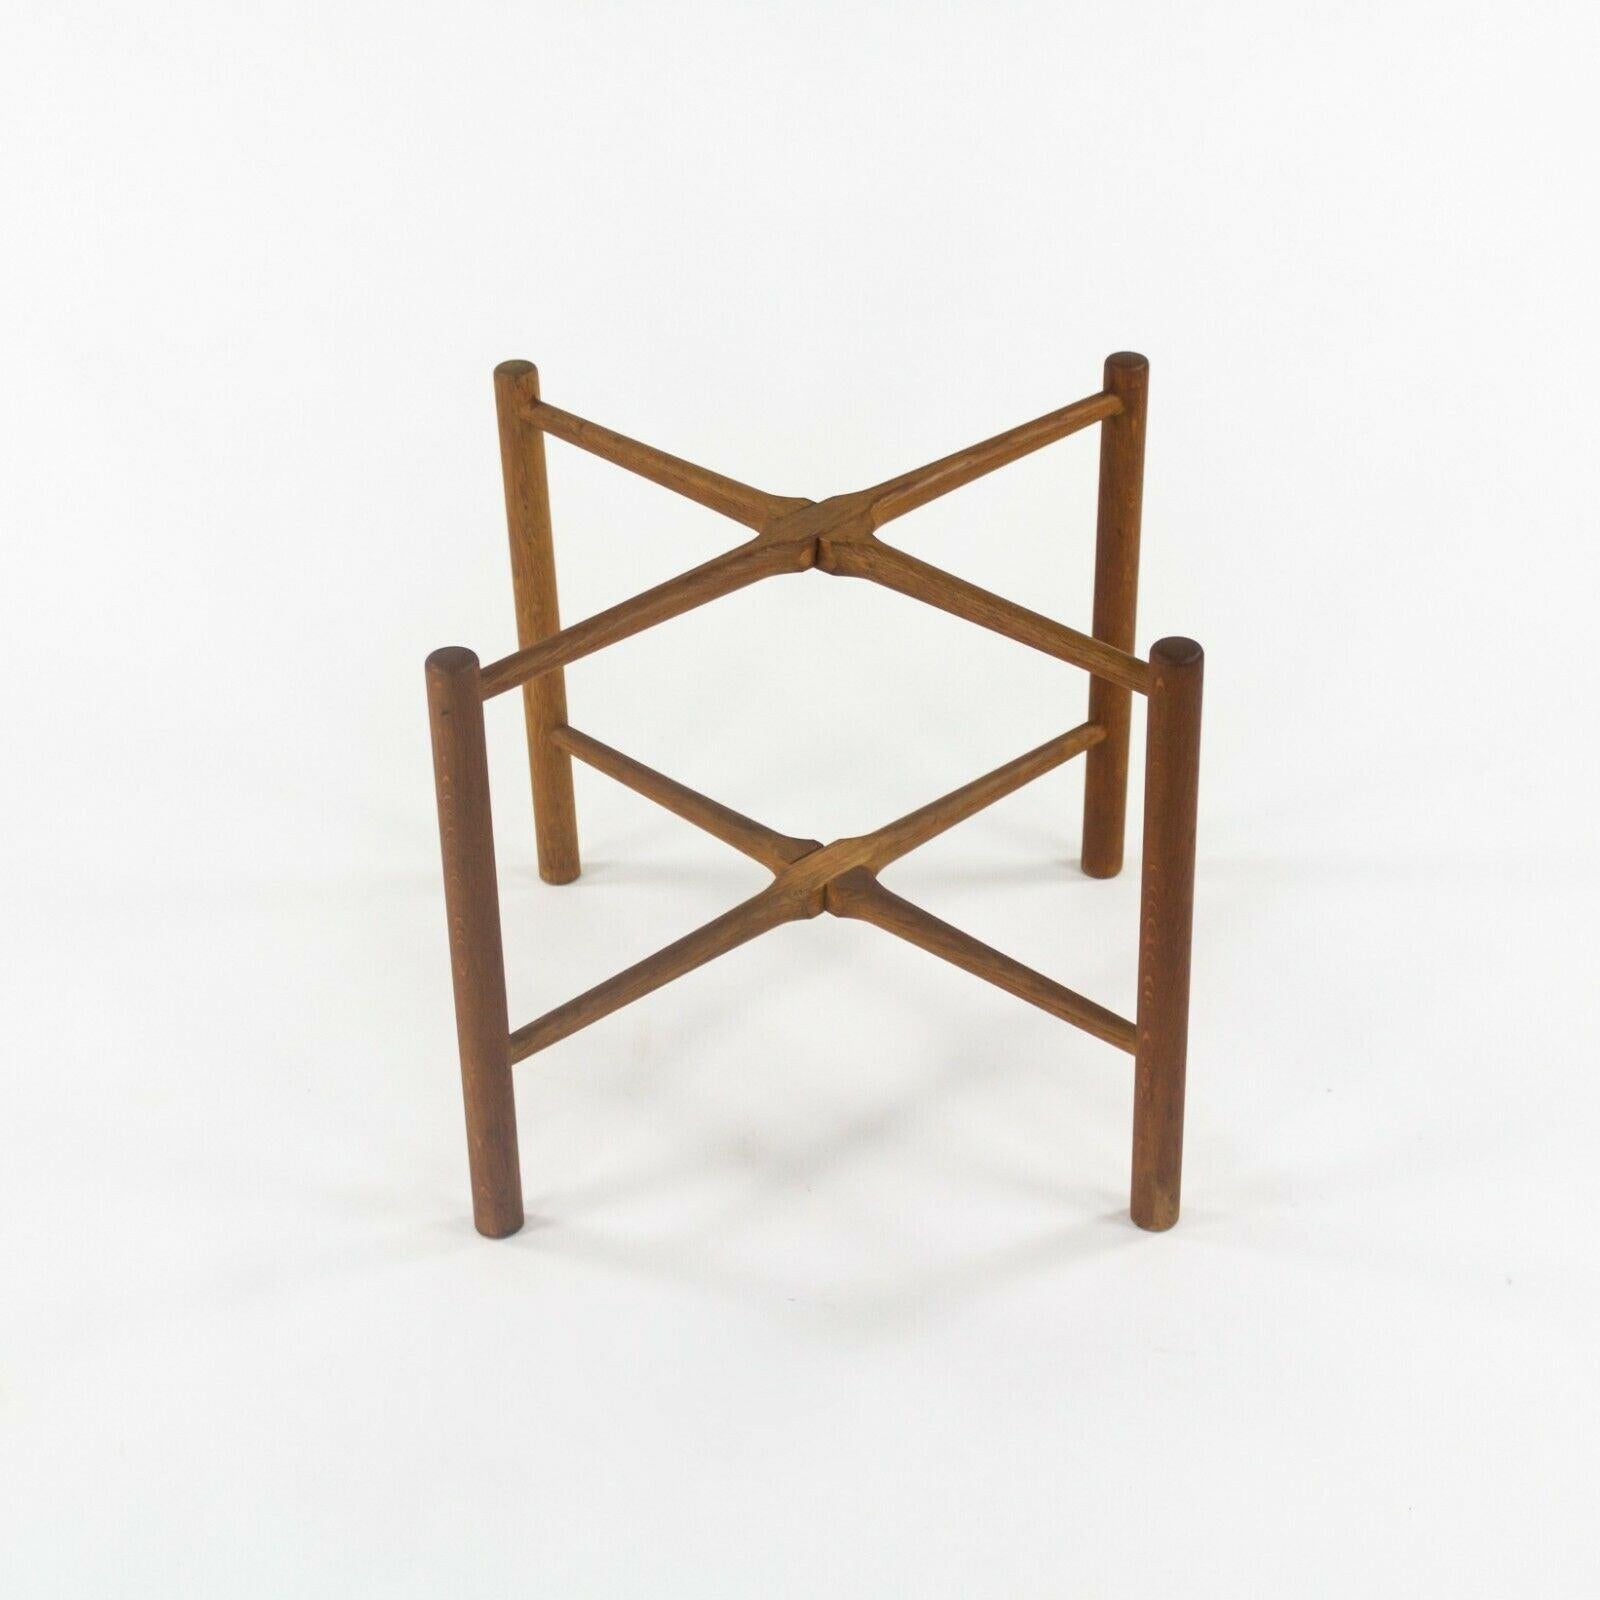 1960 PP35 Hans Wegner for &reas Tuck Folding Teak & Oak Side Table 2x Available For Sale 2